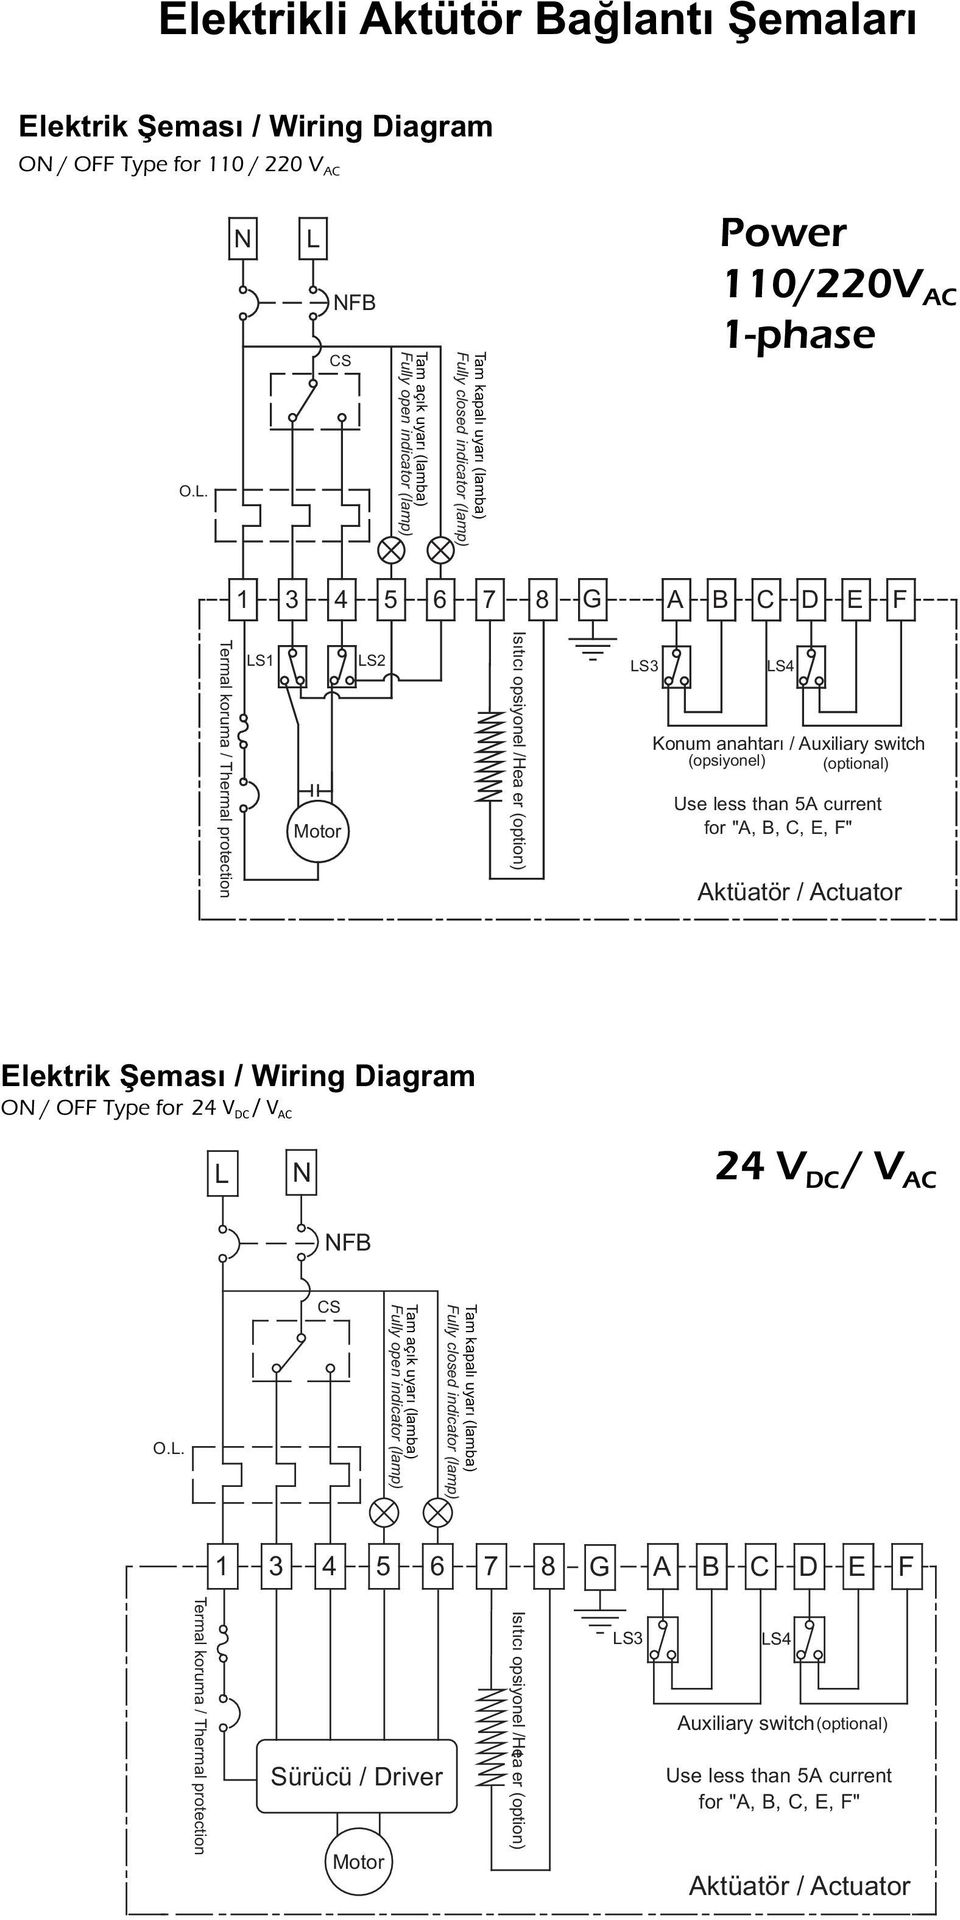 Elektrikli Aktütör Bağlantı Şemaları - PDF Ücretsiz indirin